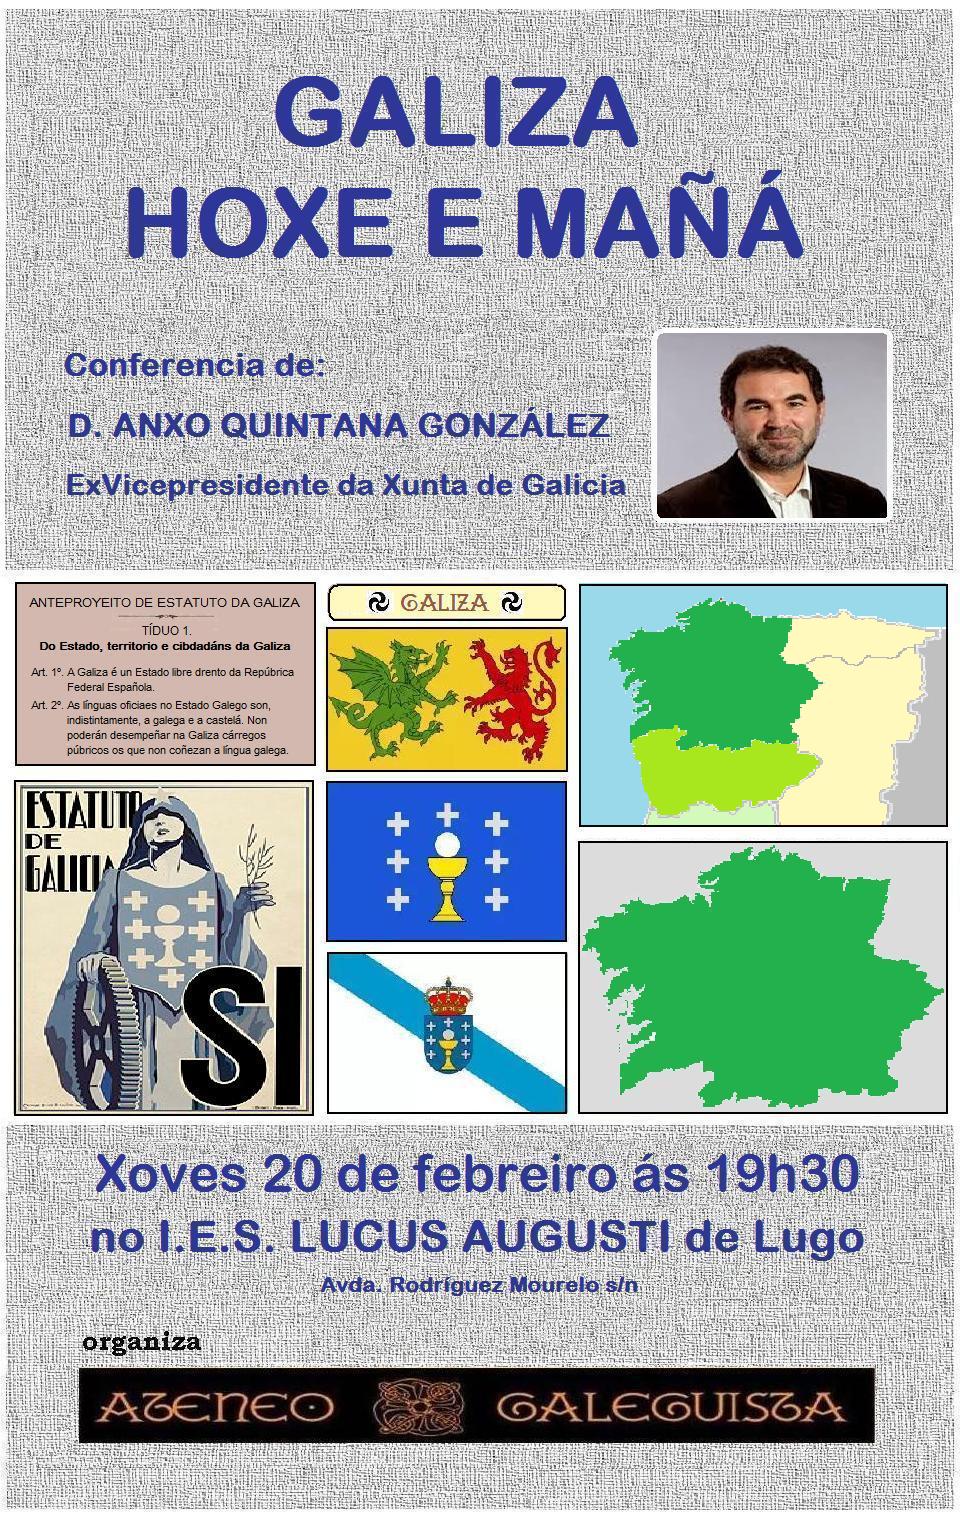 Cartel da Conferencia - "Galiza: hoxe e mañá" con Anxo Quintana